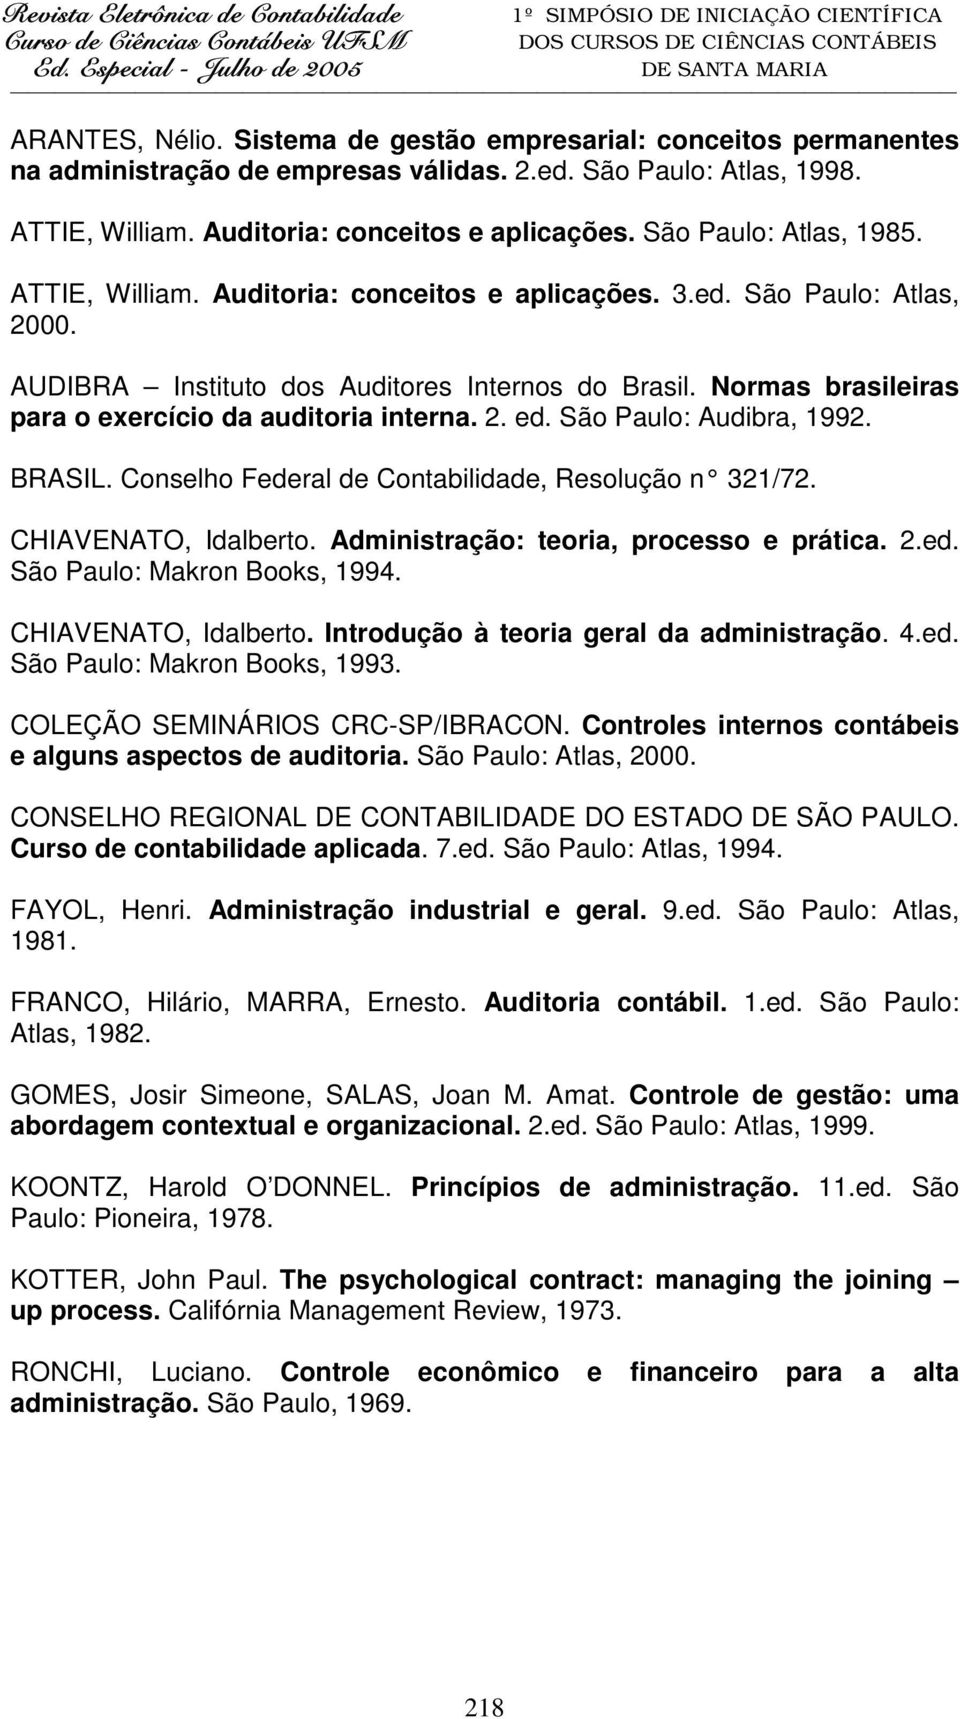 Normas brasileiras para o exercício da auditoria interna. 2. ed. São Paulo: Audibra, 1992. BRASIL. Conselho Federal de Contabilidade, Resolução n 321/72. CHIAVENATO, Idalberto.